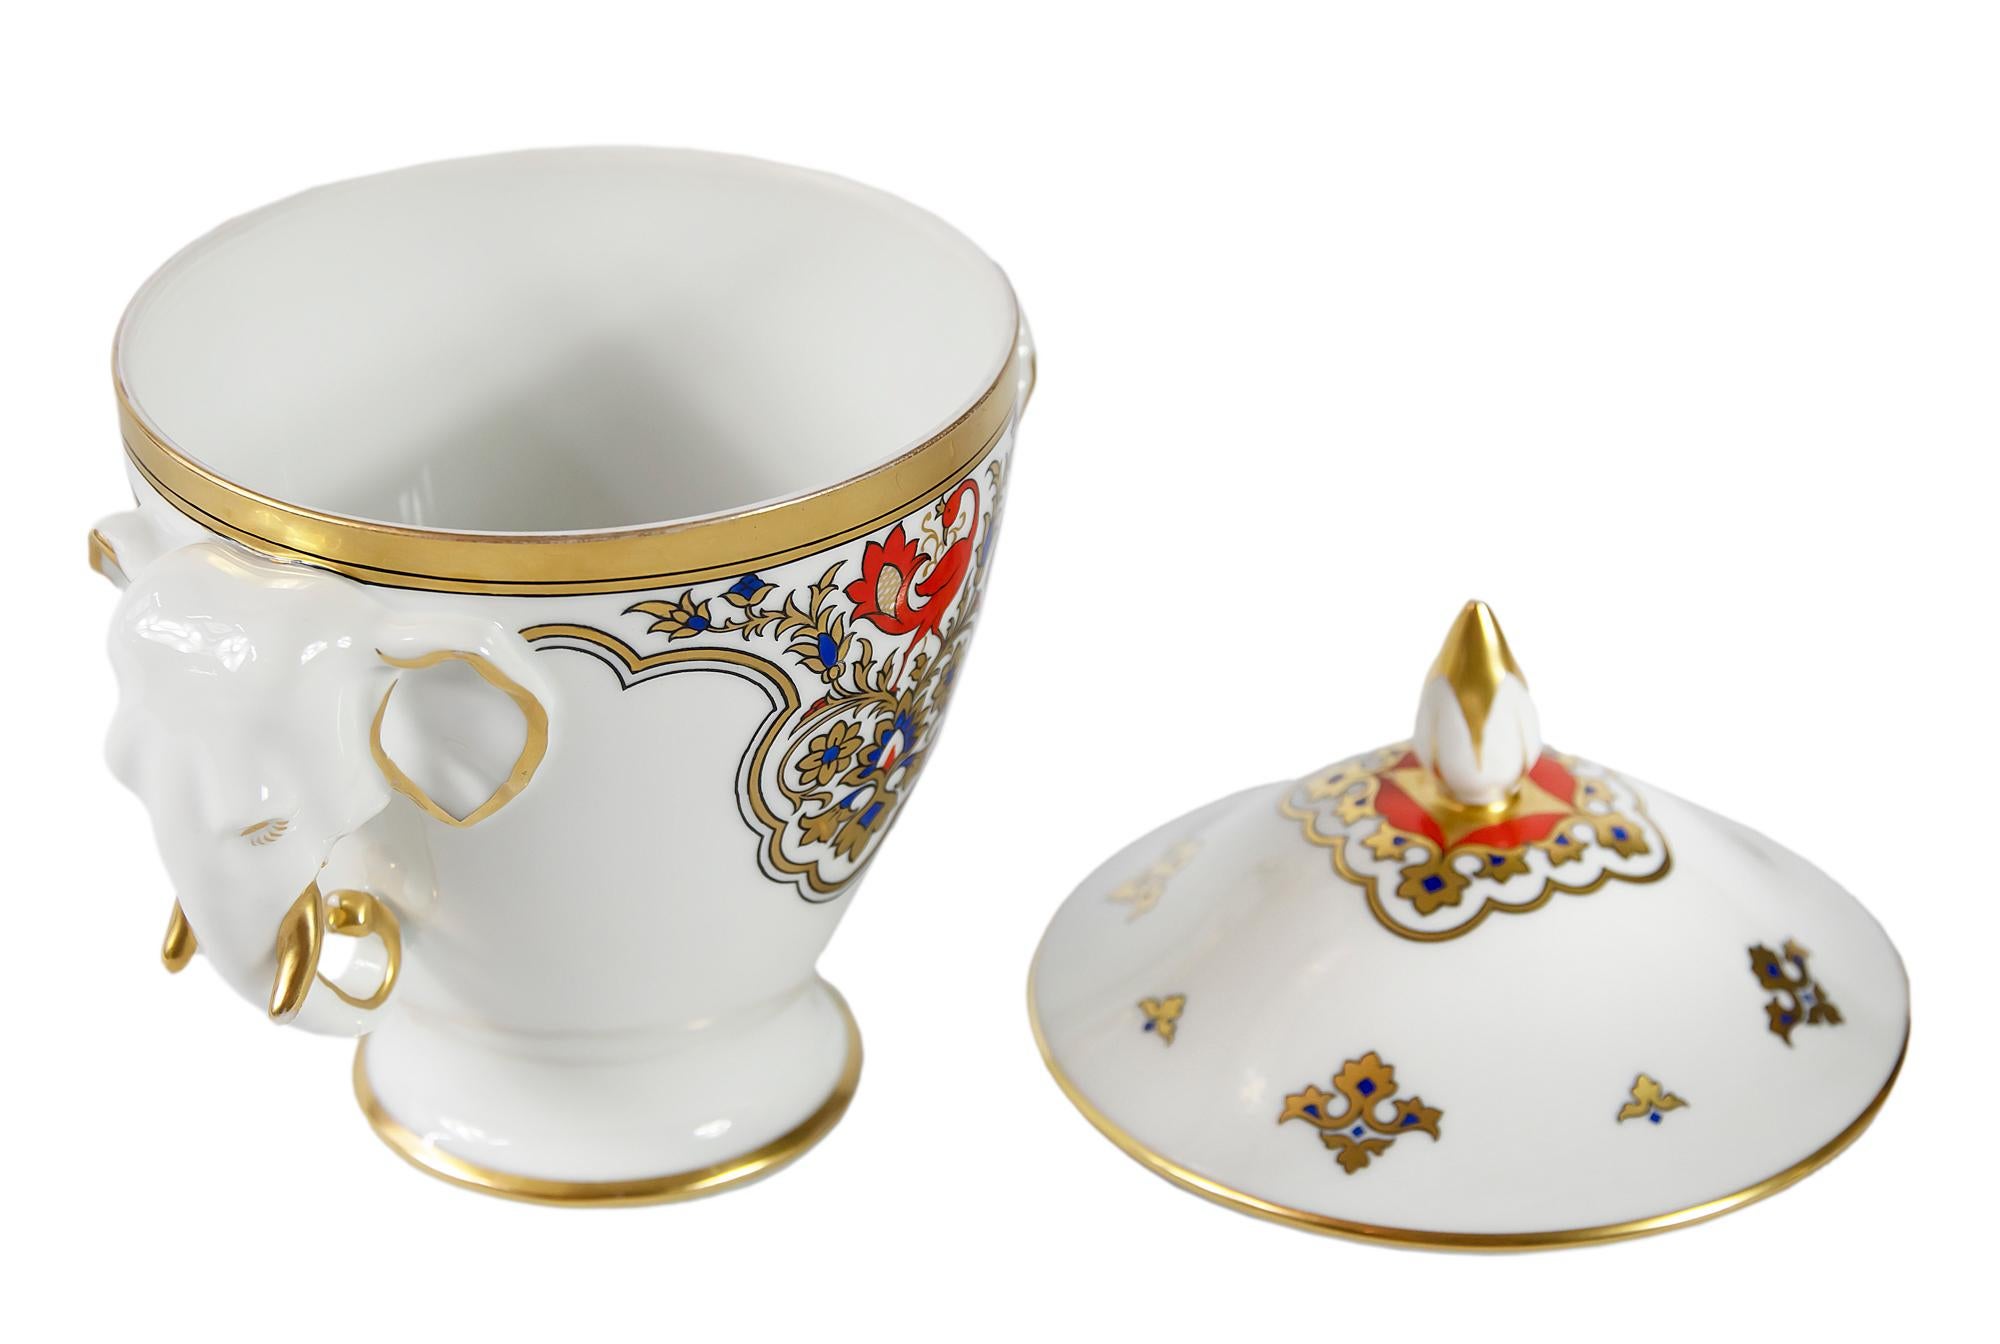 Gilt Furstenberg Porcelain Sugar Bowl or Lid Dish